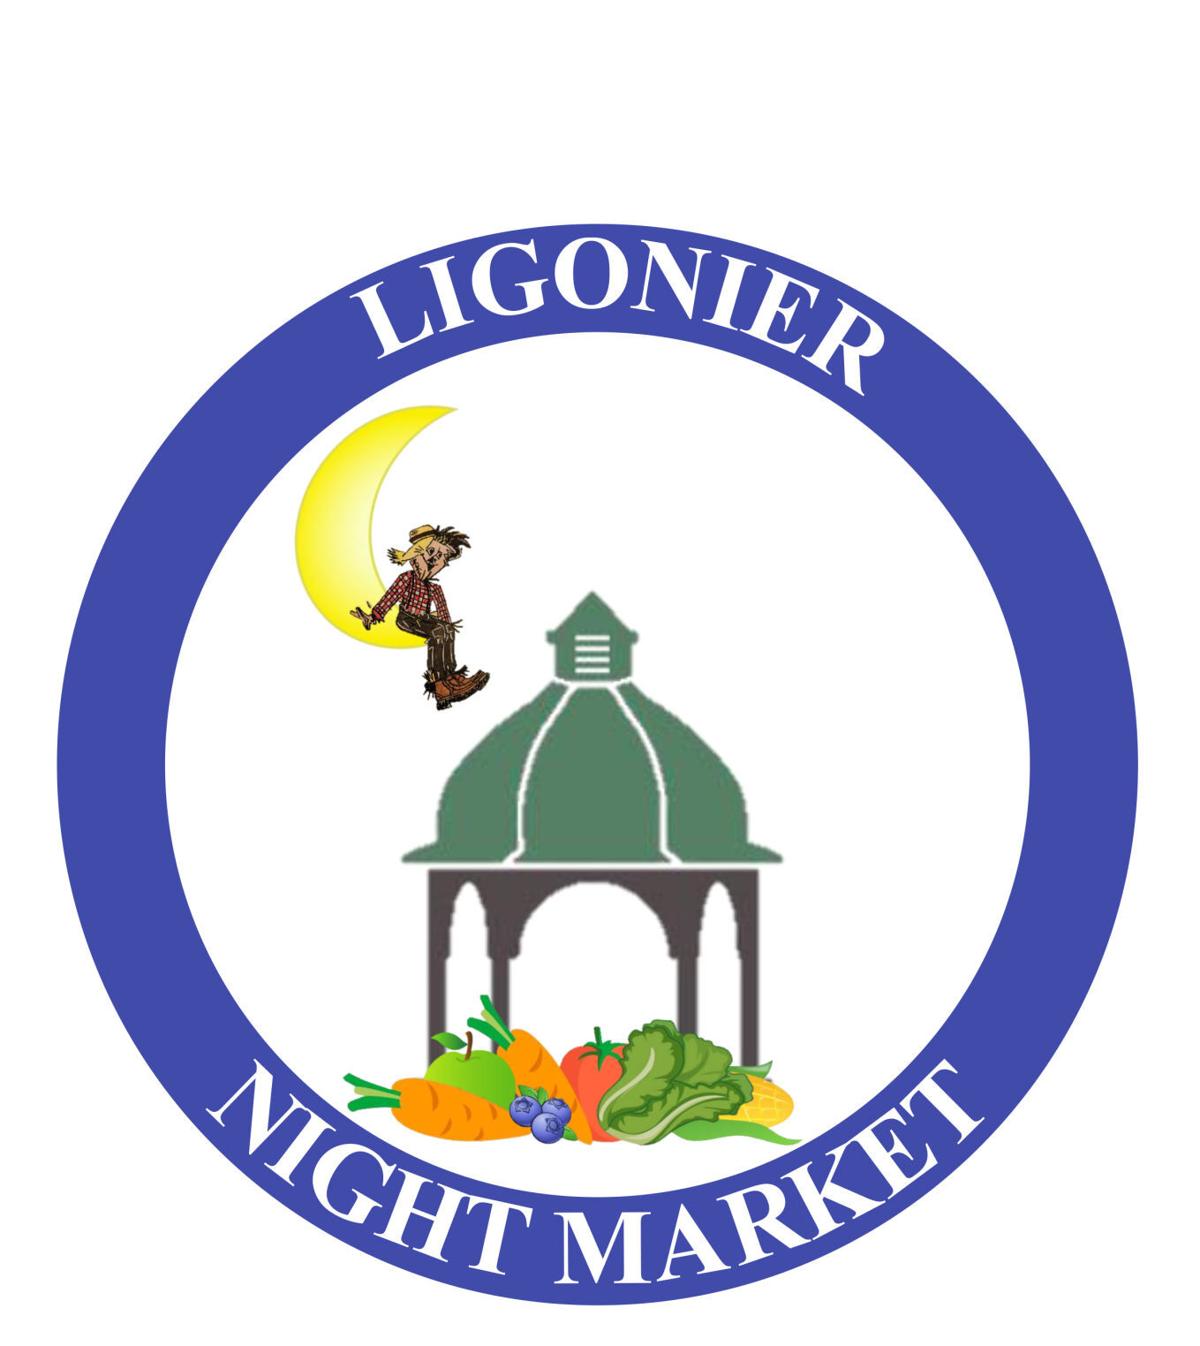 Ligonier Night Market adding craft vendors to close season Local News